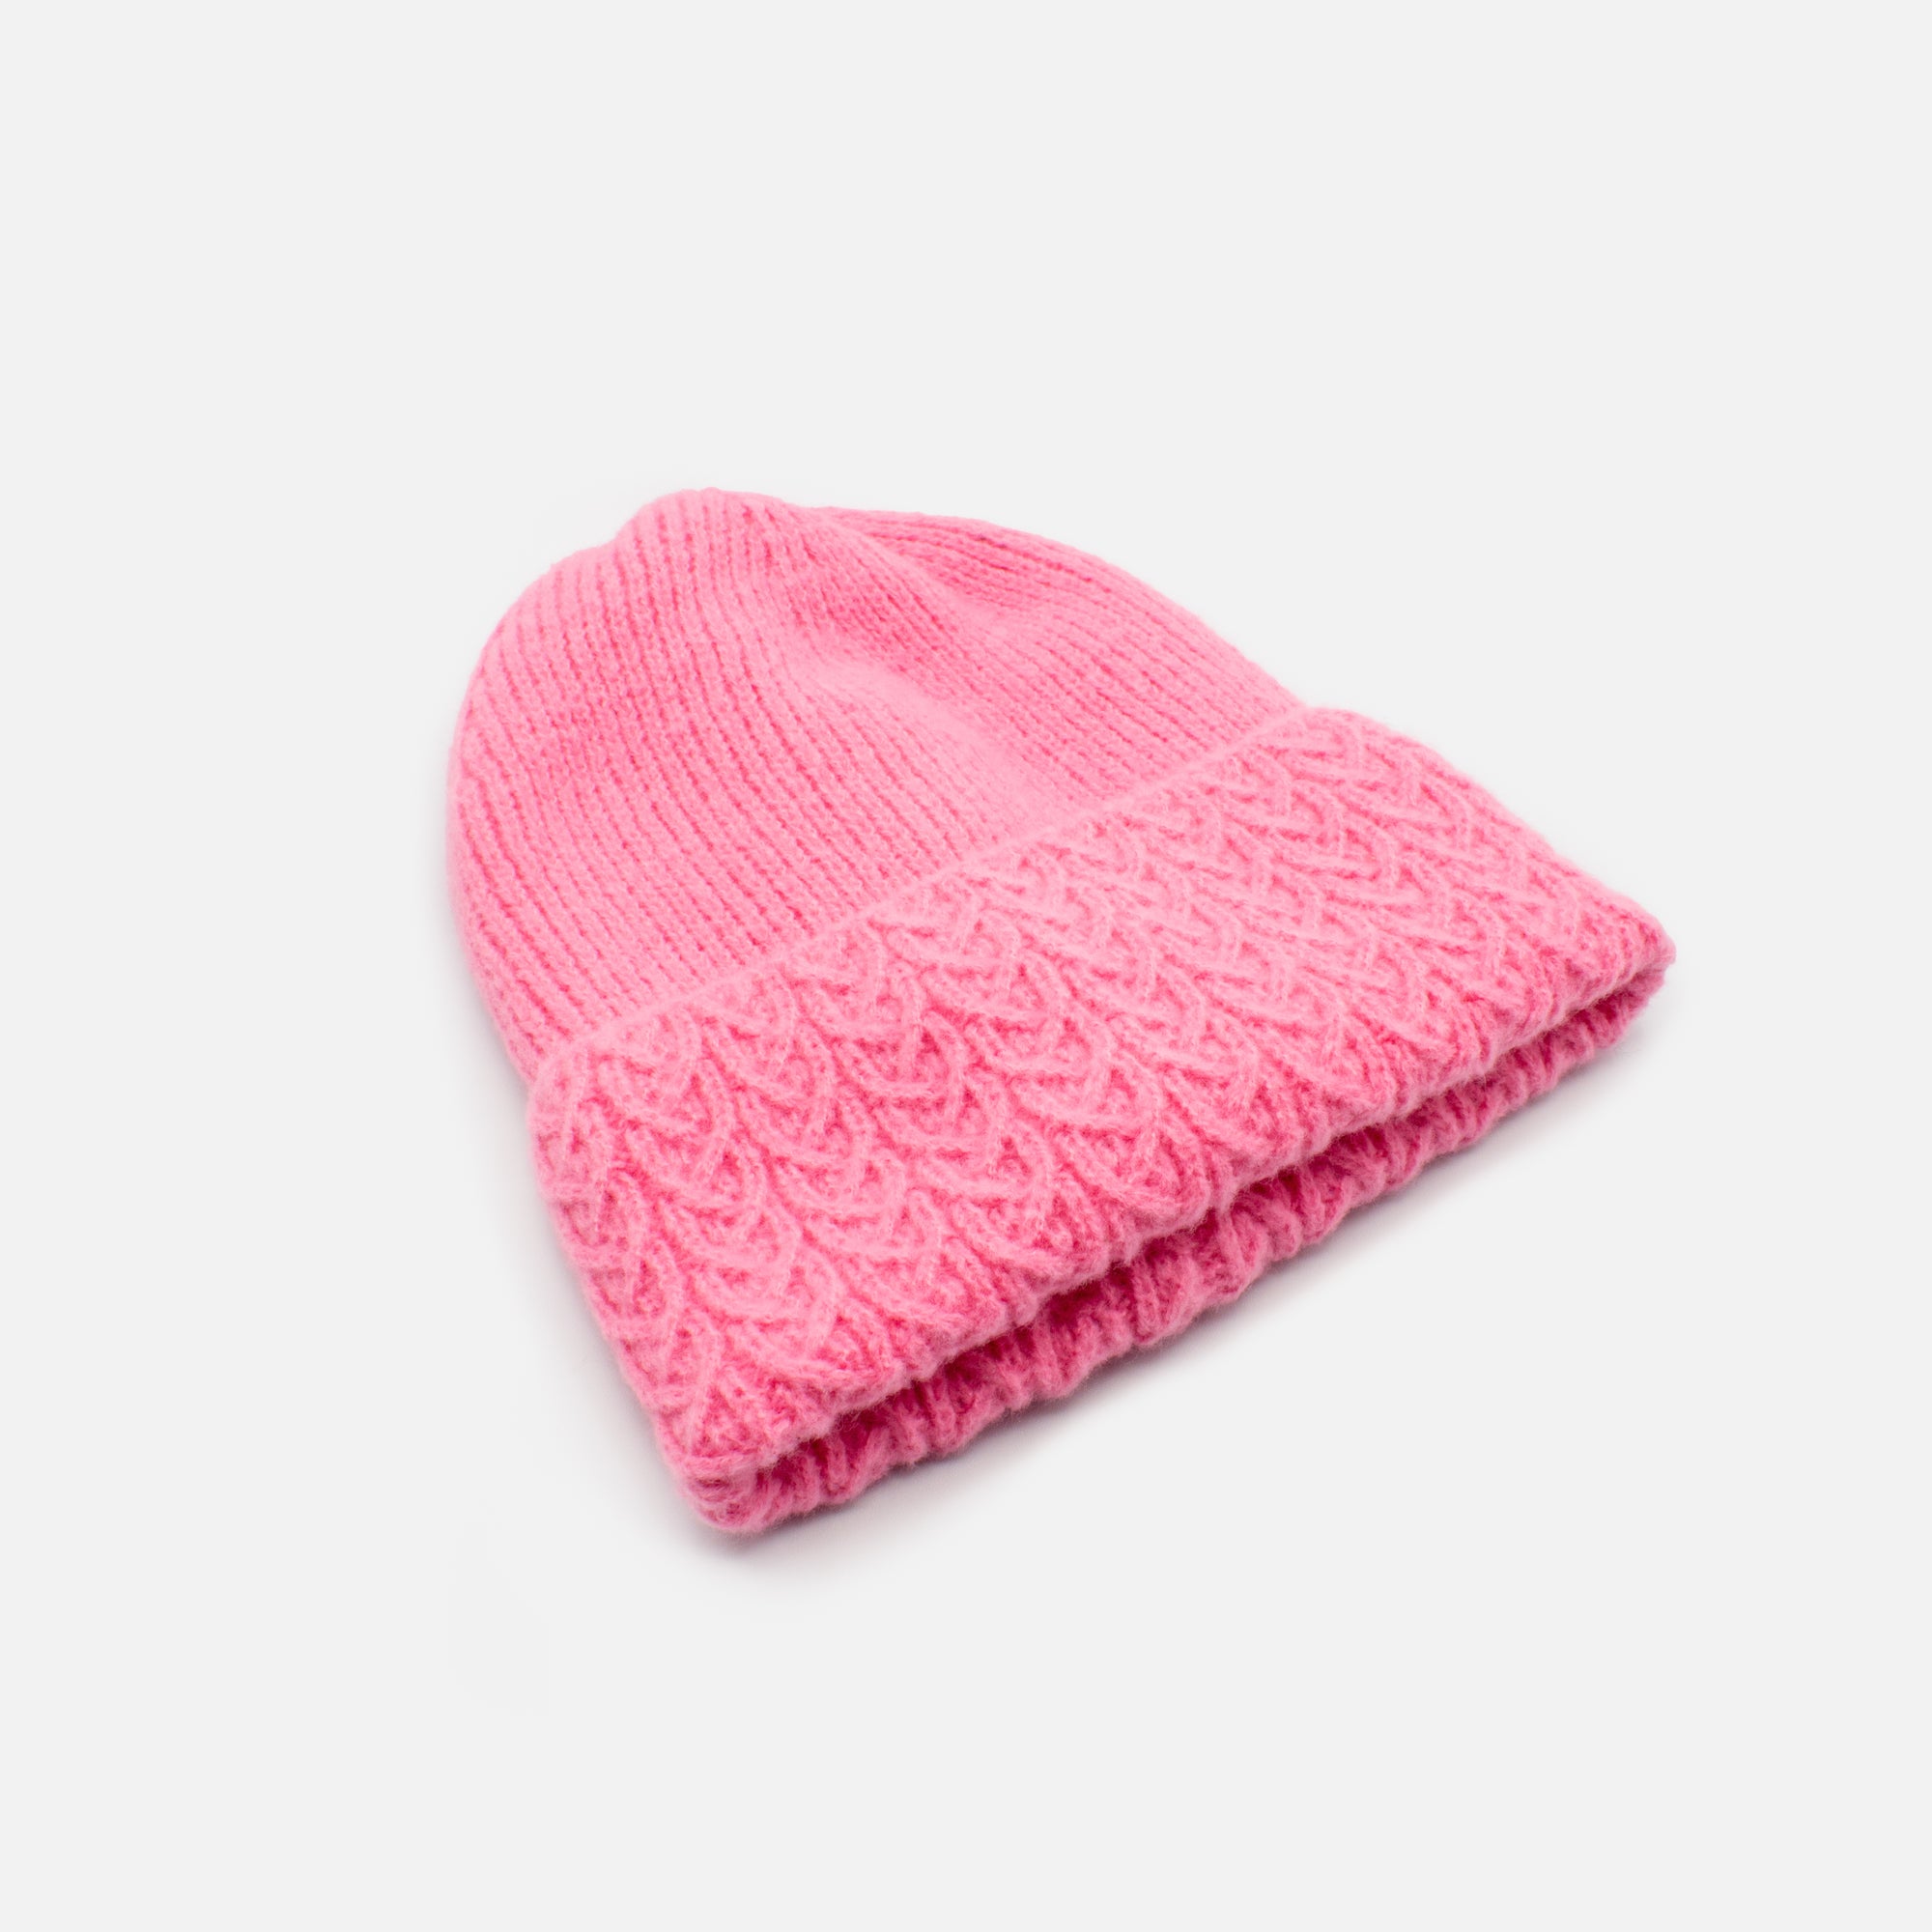 Tuque rose en tricot avec rabat tressé